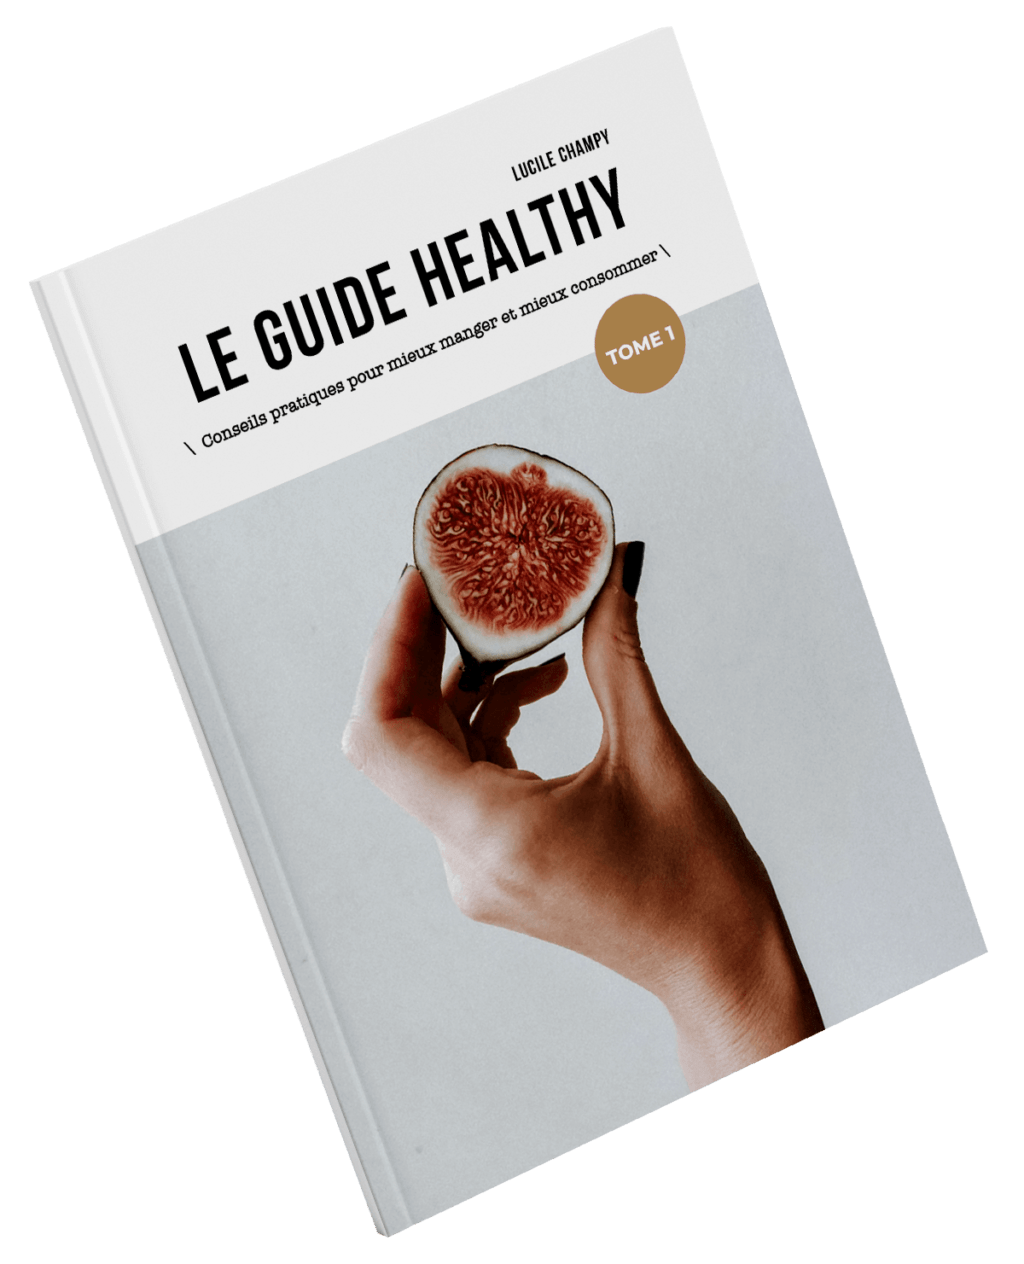 Le guide healthy version papier